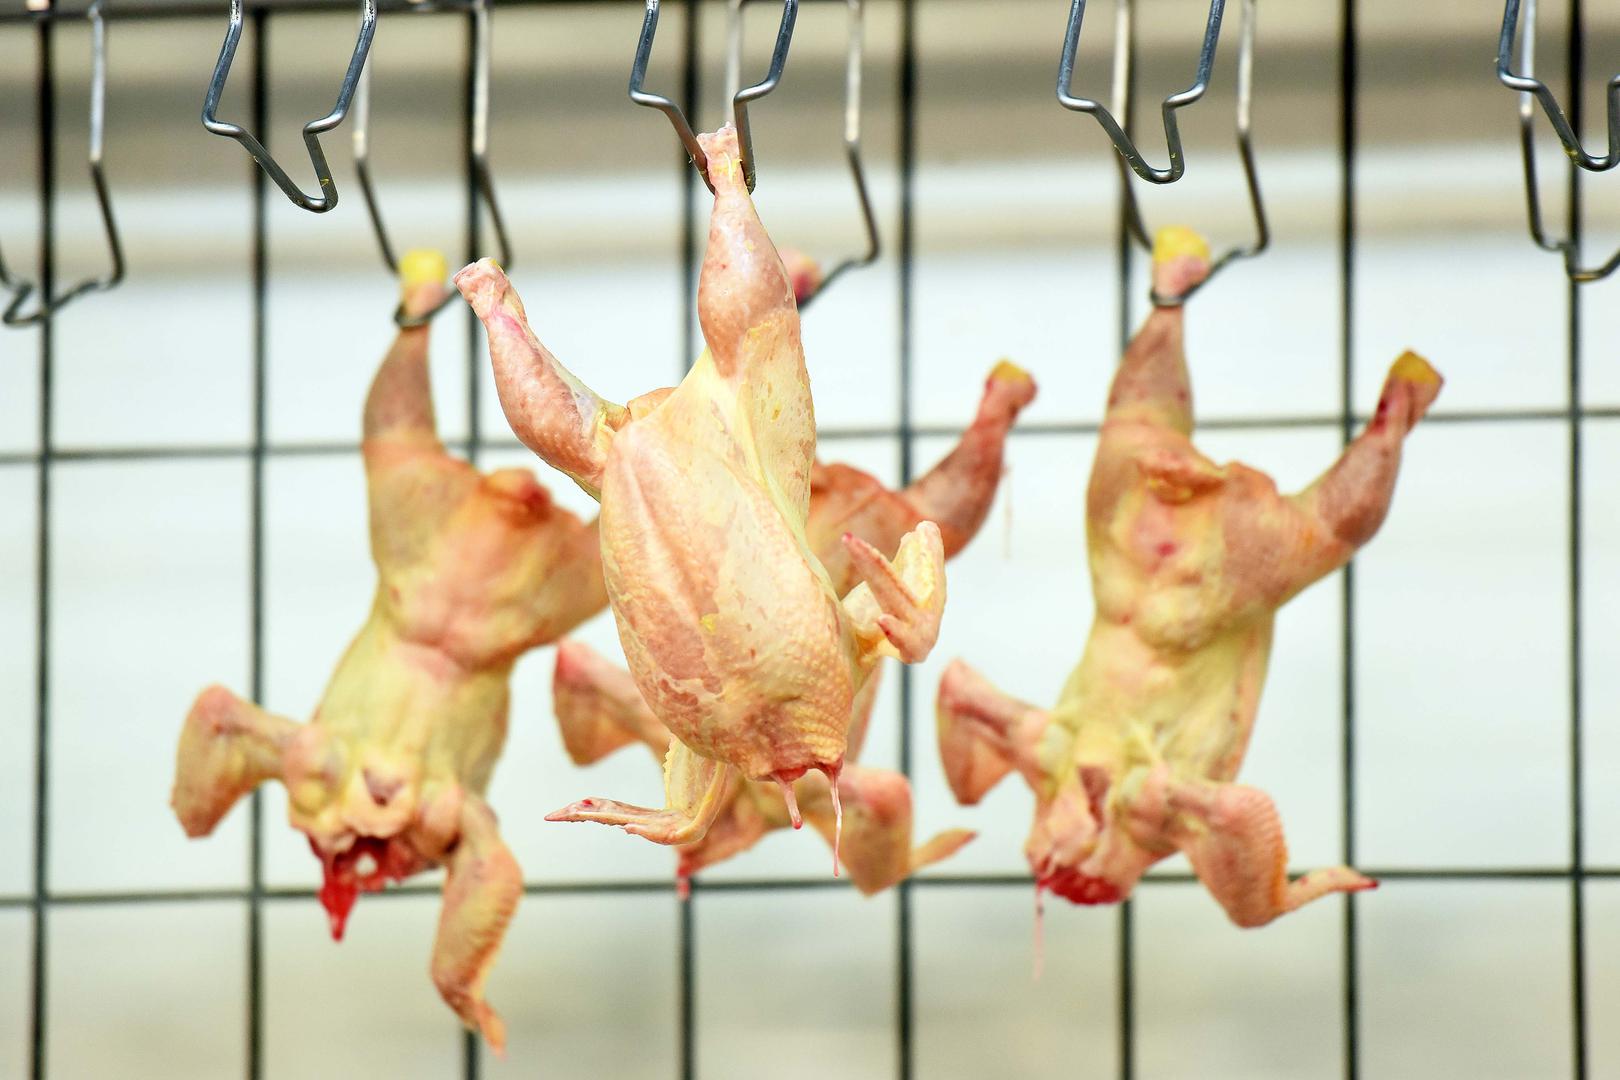 2. PILETINA – Mnogi misle da će pranjem piletine prije kuhanja riješiti problem bakterija, no time ih samo šire na ruke i kuhinjsku radnu površinu zbog prskanja vode. 